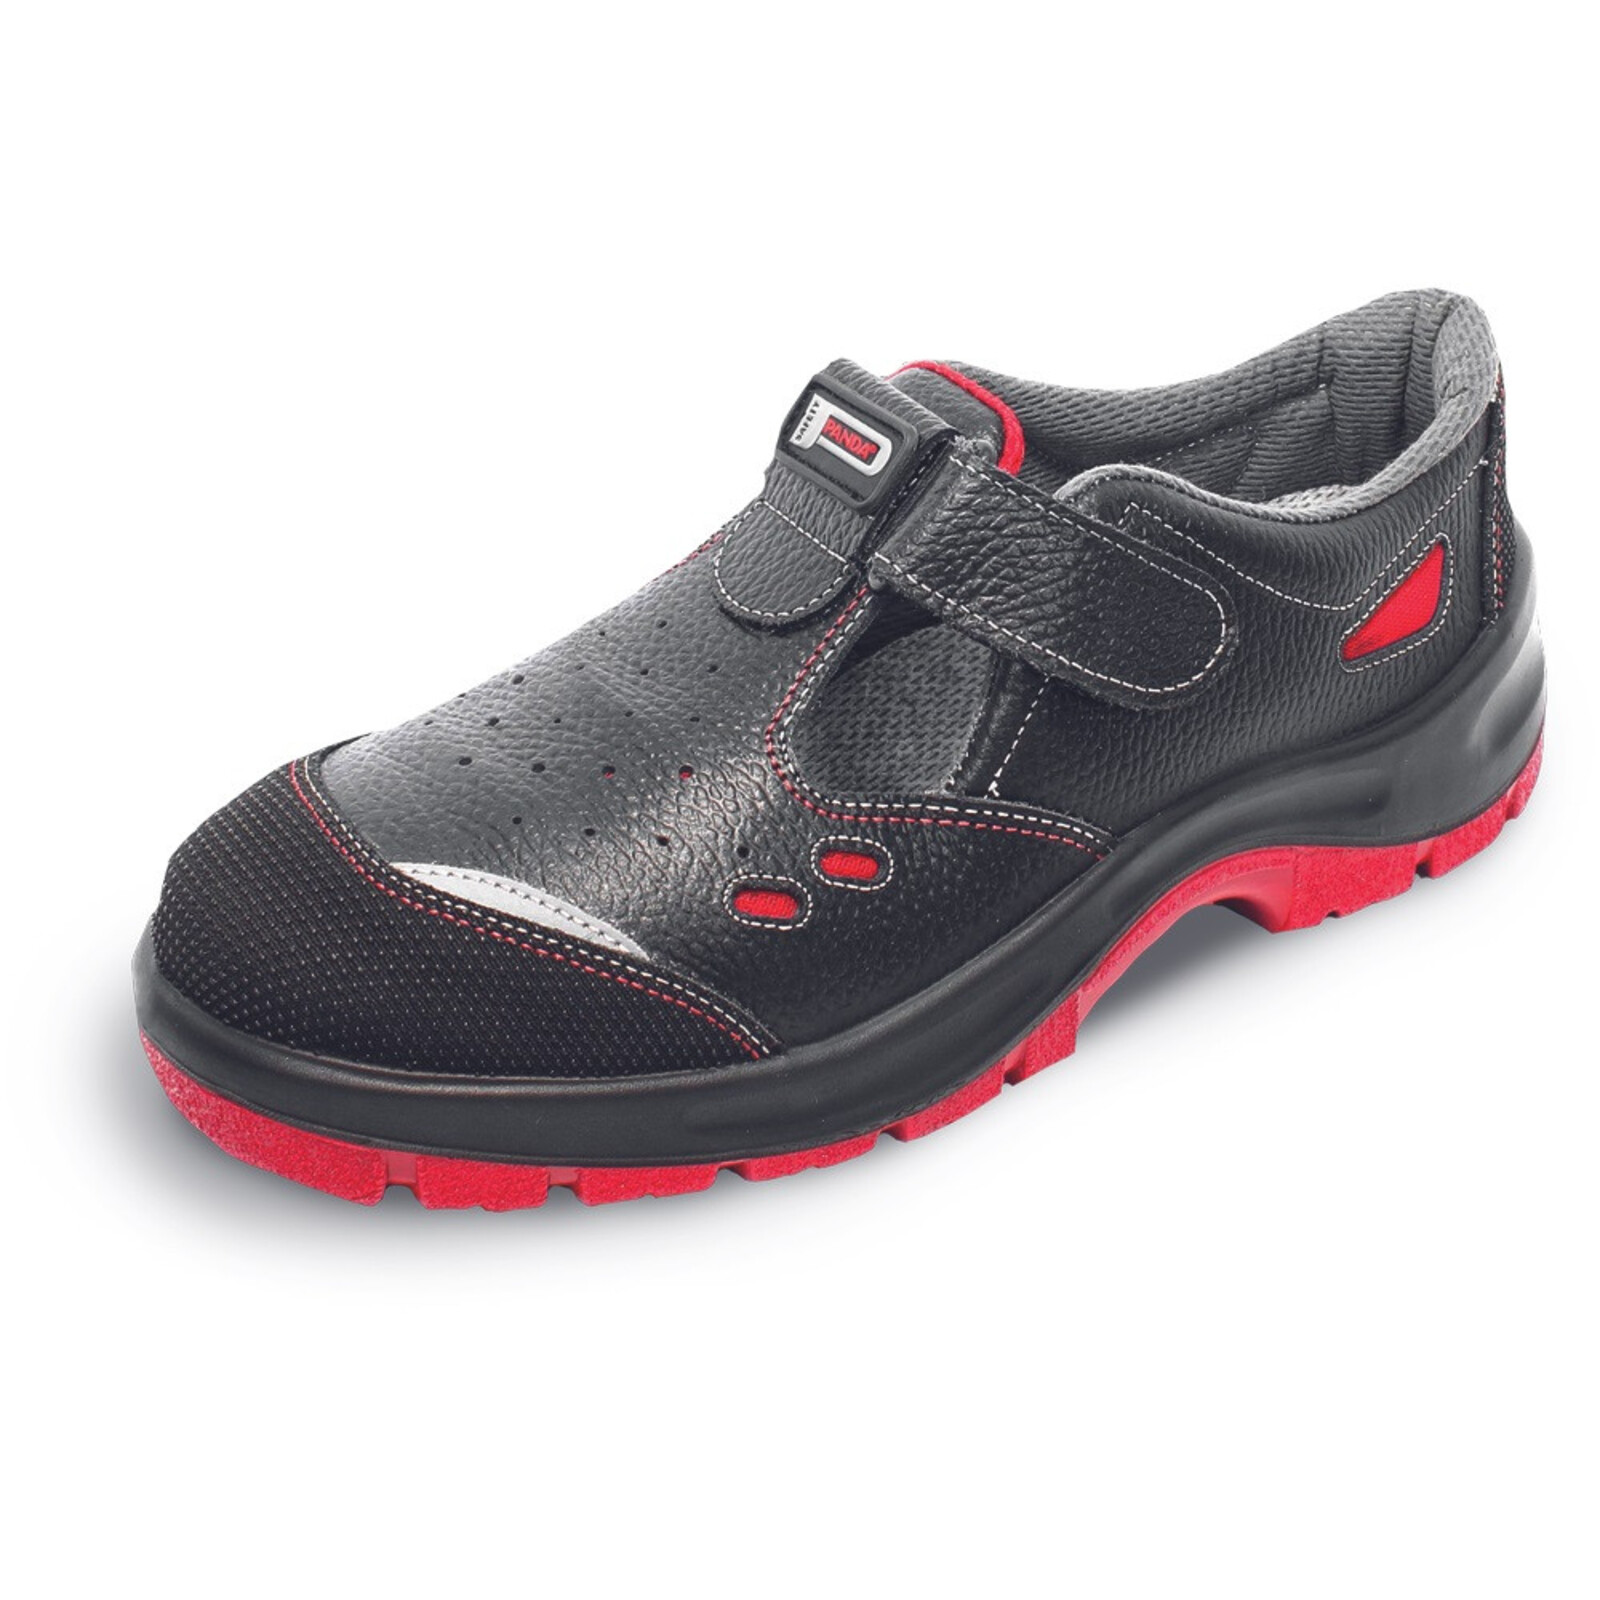 Bezpečnostné sandále Panda Strong Nuovo Topolino MF S1 SRC - veľkosť: 45, farba: čierna/červená